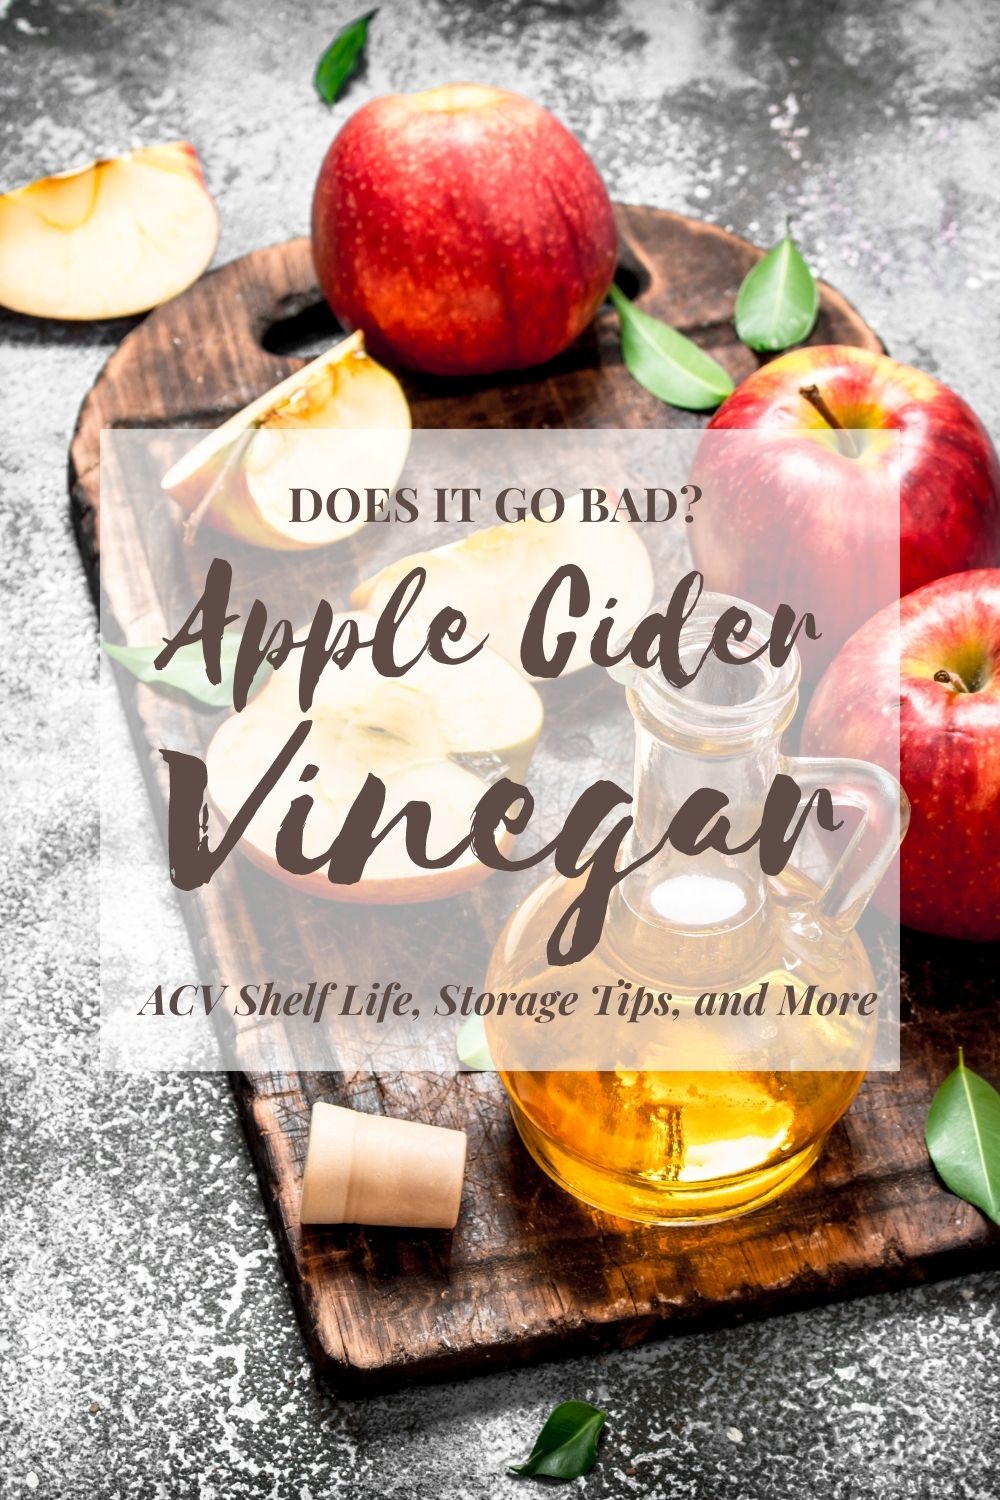 Does apple cider vinegar go bad?